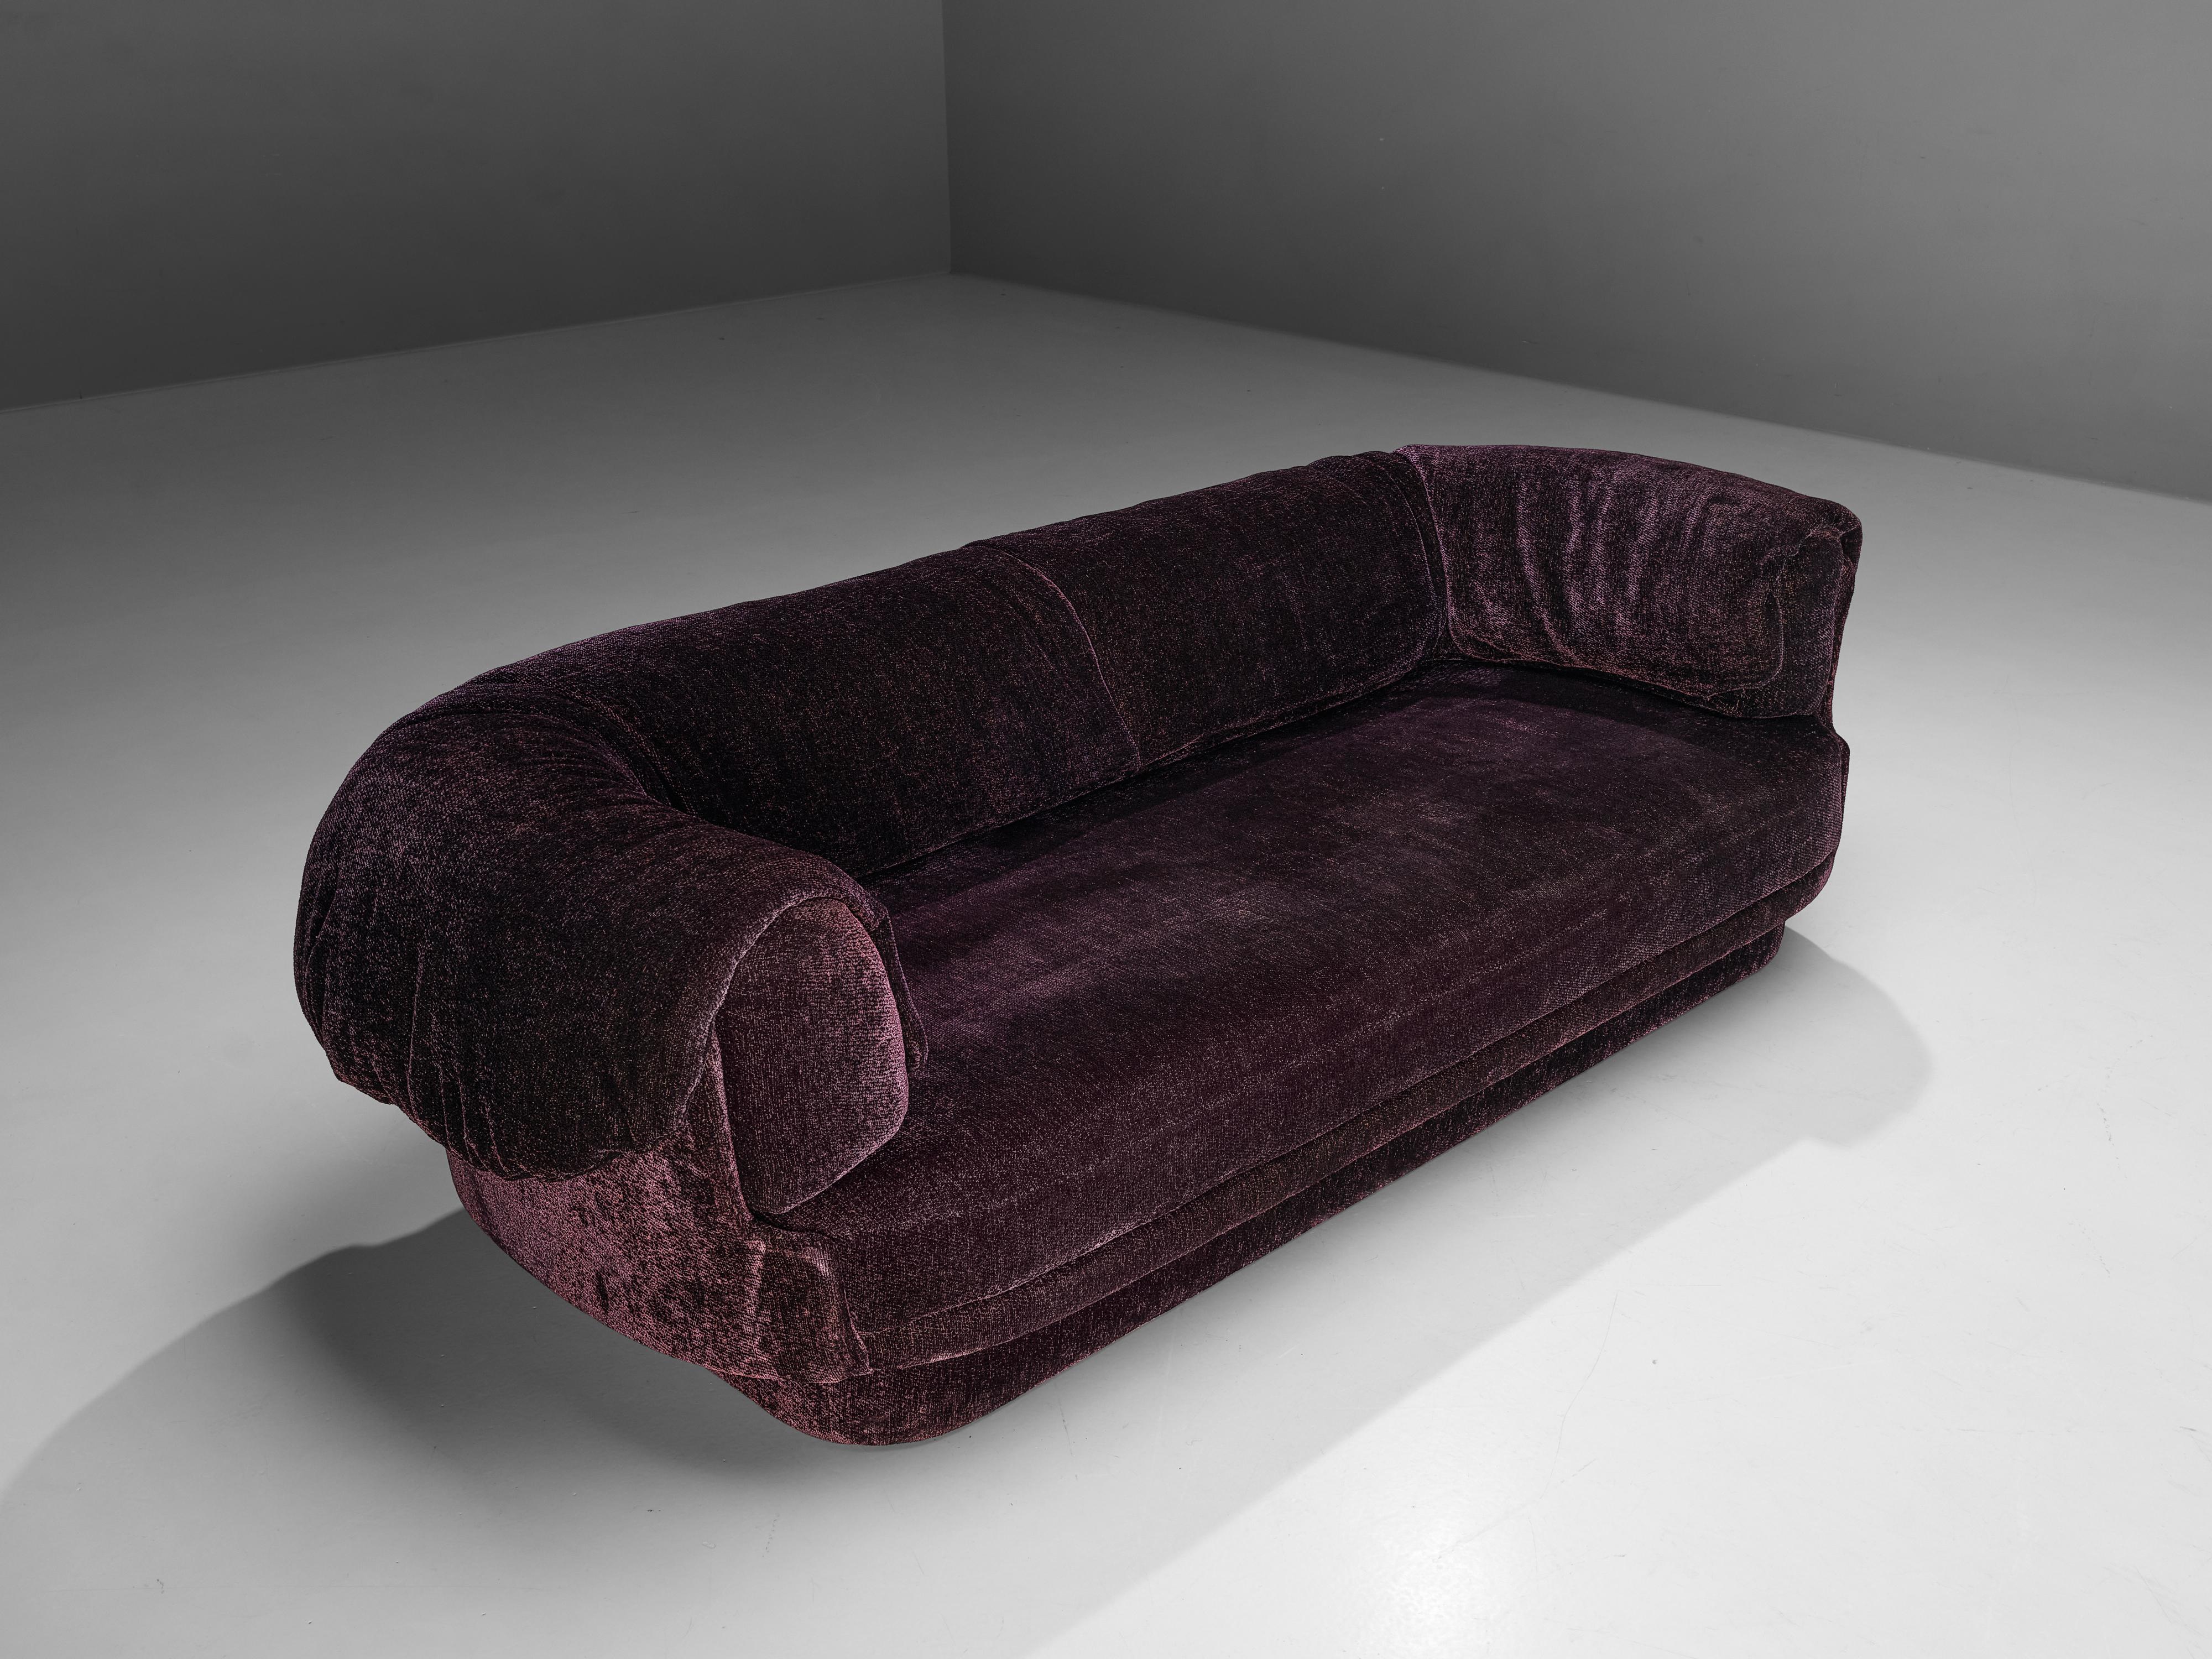 Howard Keith, canapé, tissu, Royaume-Uni, années 1970

Grand canapé voluptueux d'Howard Keith, conçu dans les années 1970. Ce canapé à l'assise profonde est un véritable délice pour s'asseoir et se détendre. Les accoudoirs épais, les coussins